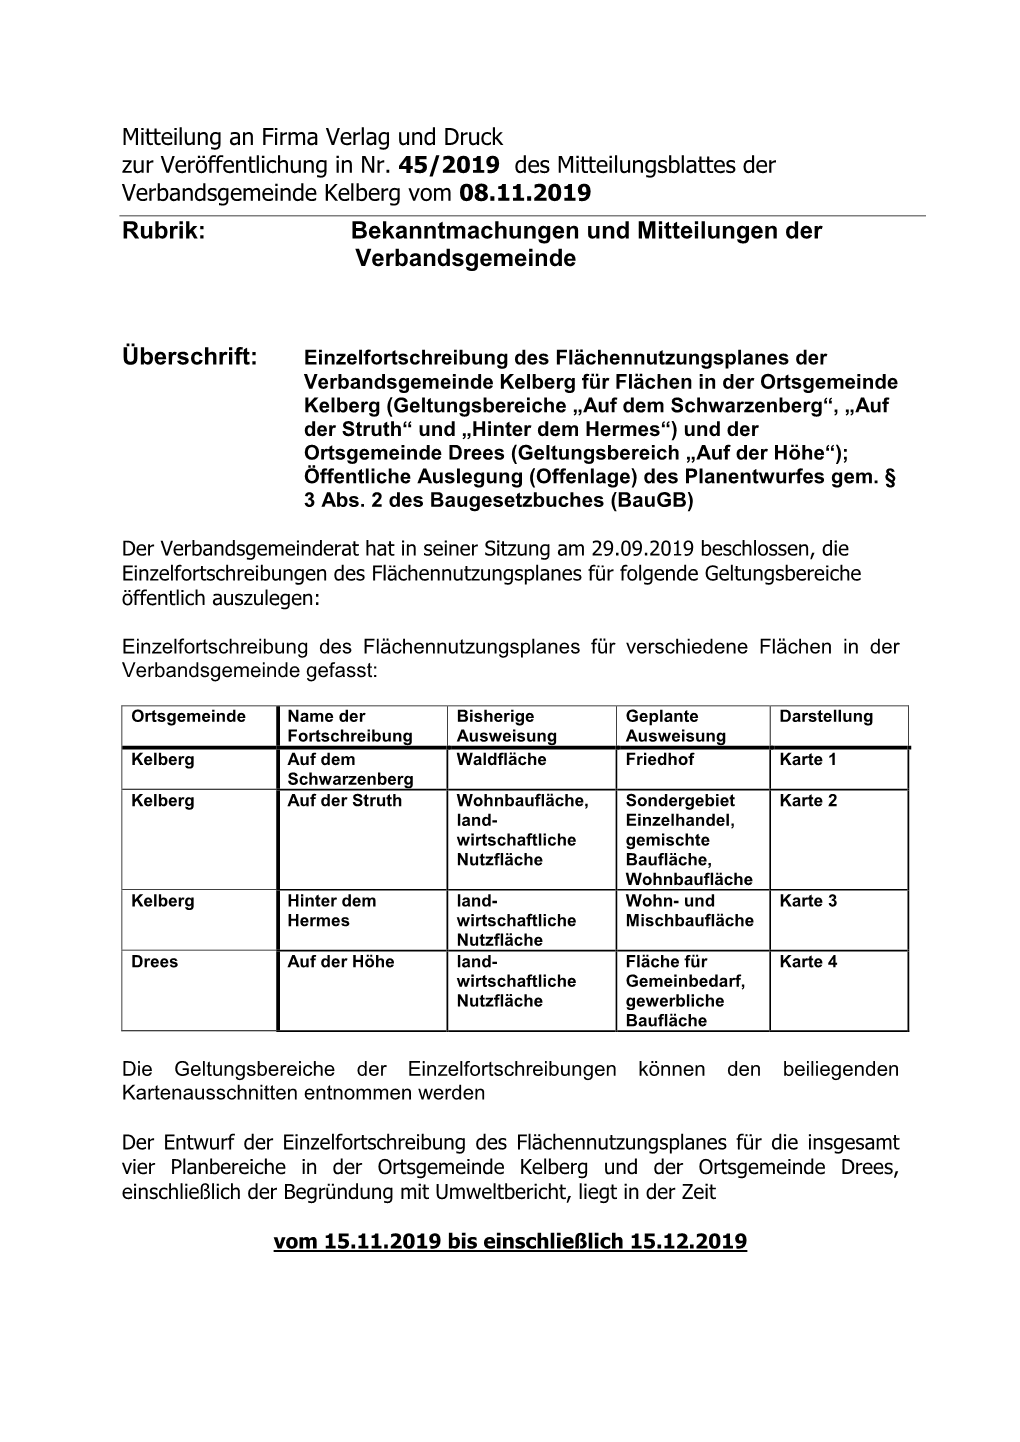 Rubrik: Bekanntmachungen Und Mitteilungen Der Verbandsgemeinde Überschrift